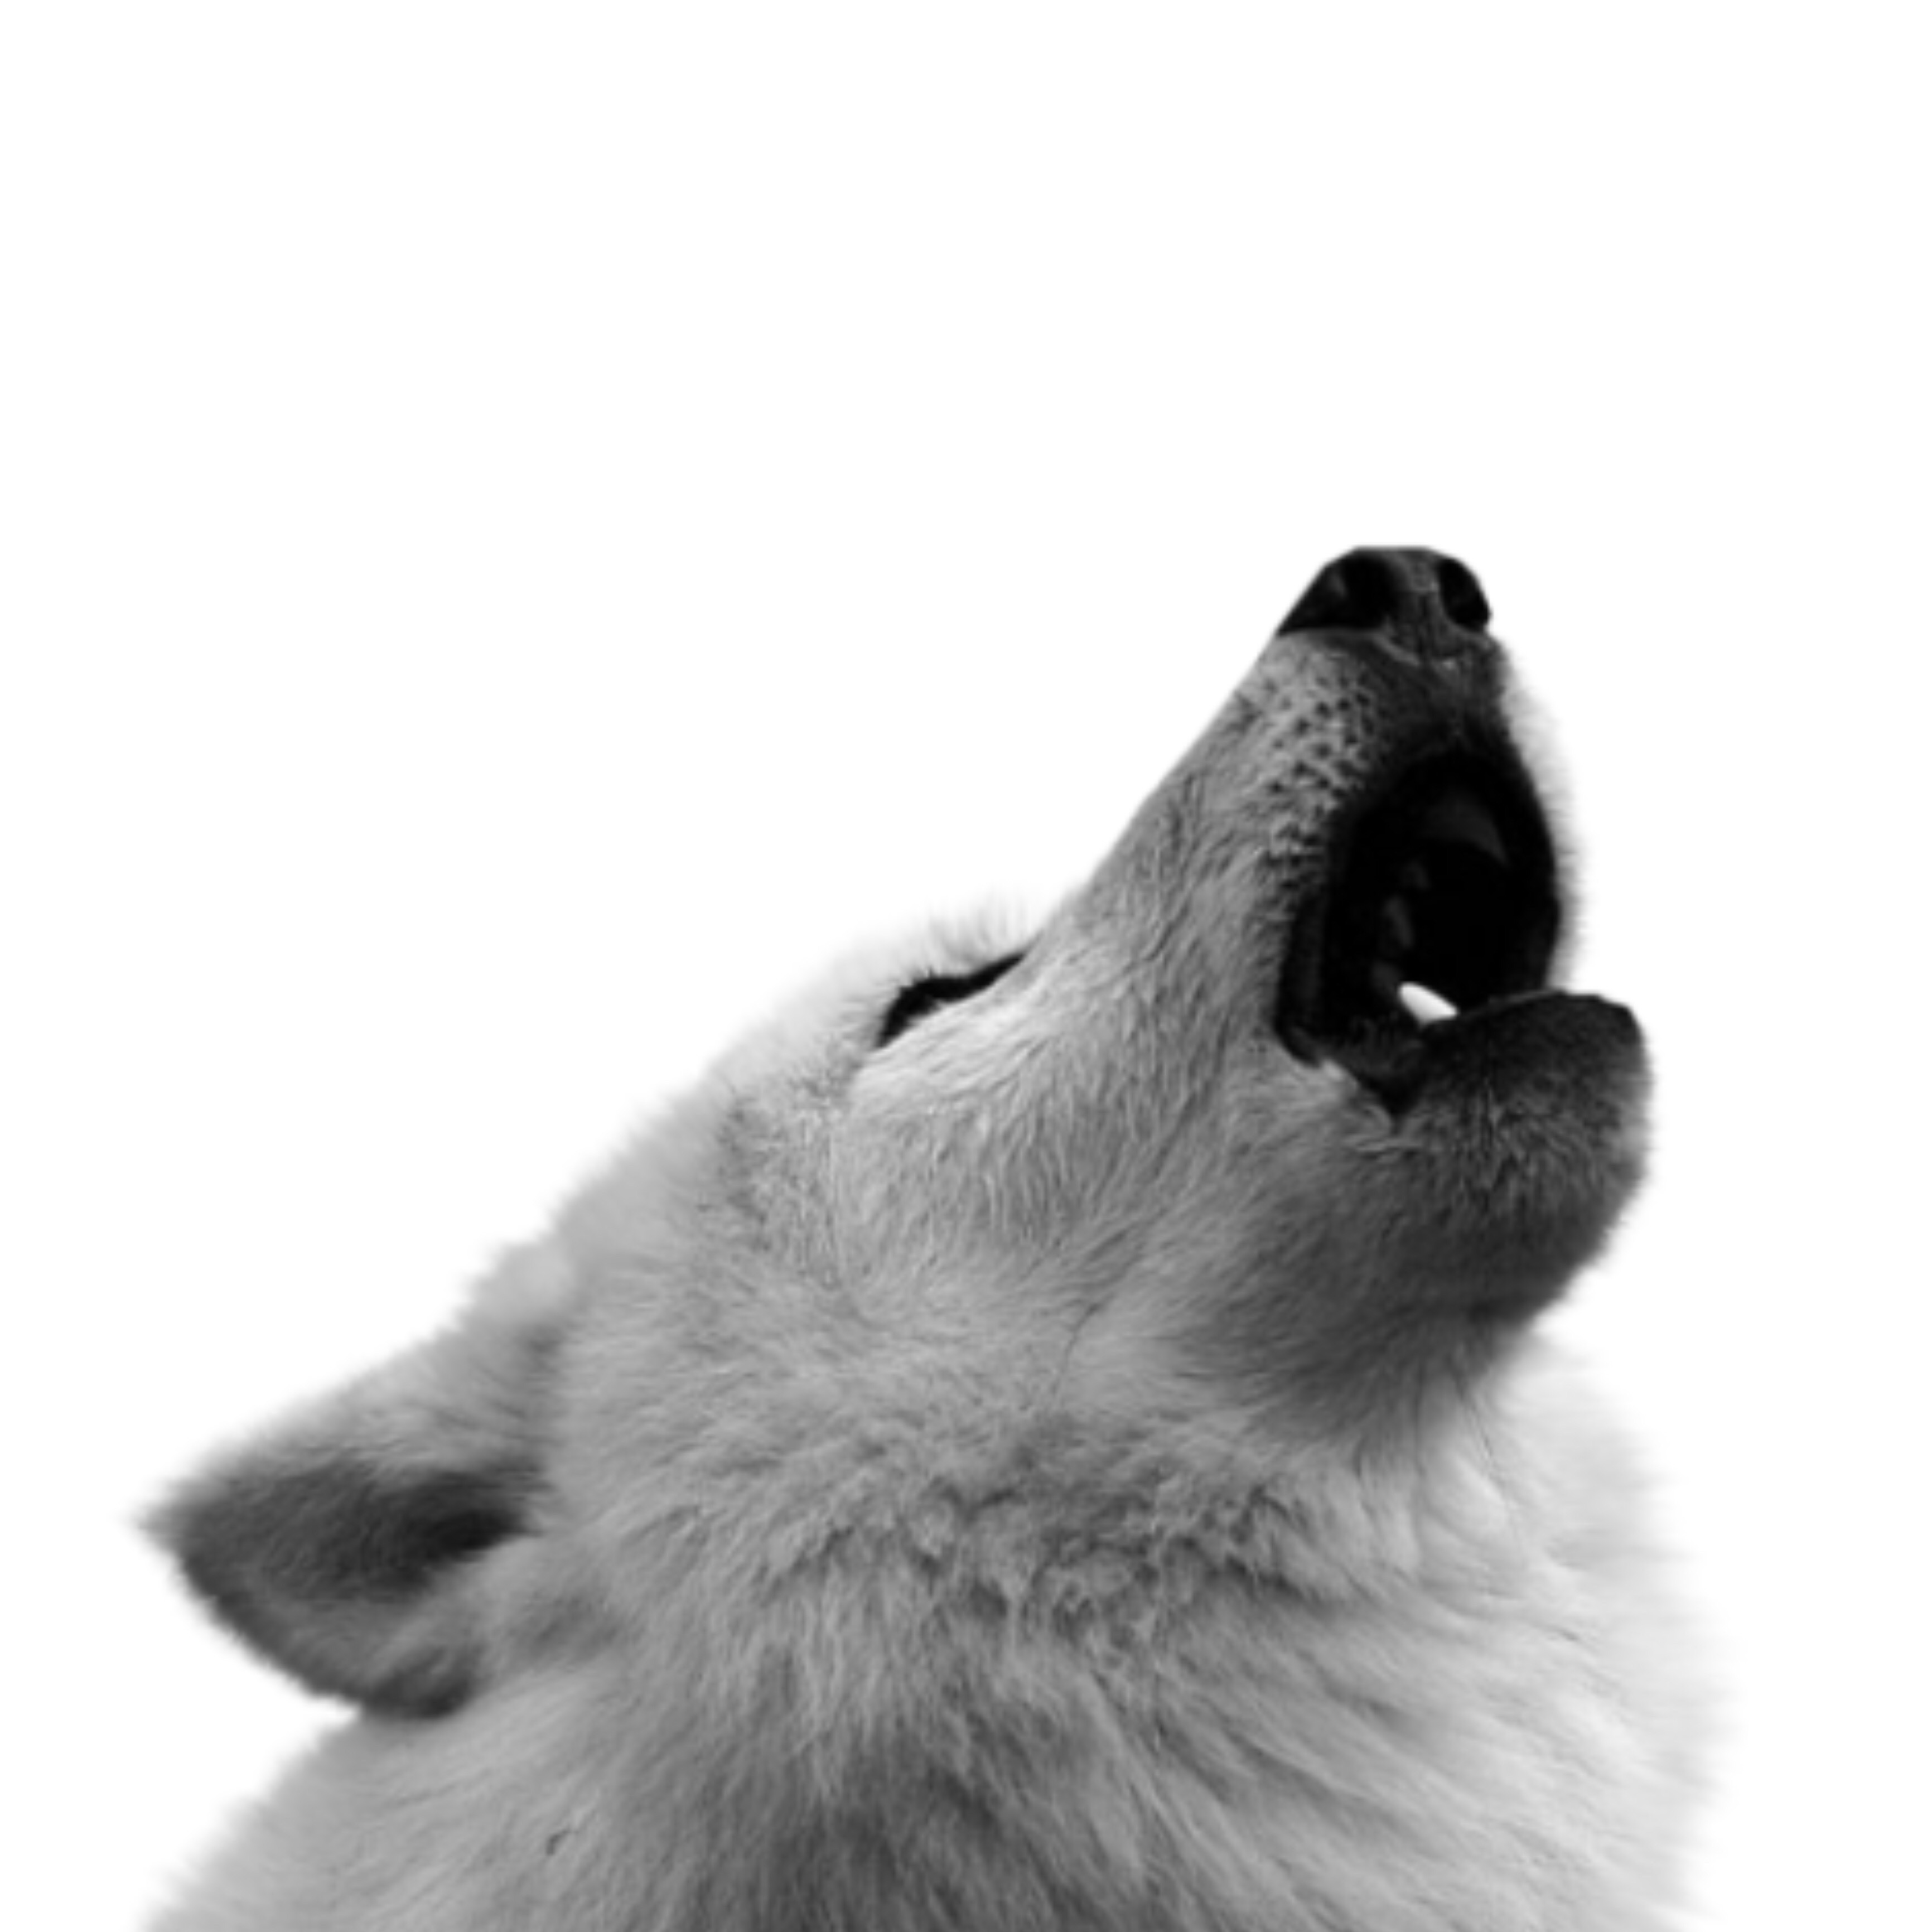 Волк воет на белом фоне